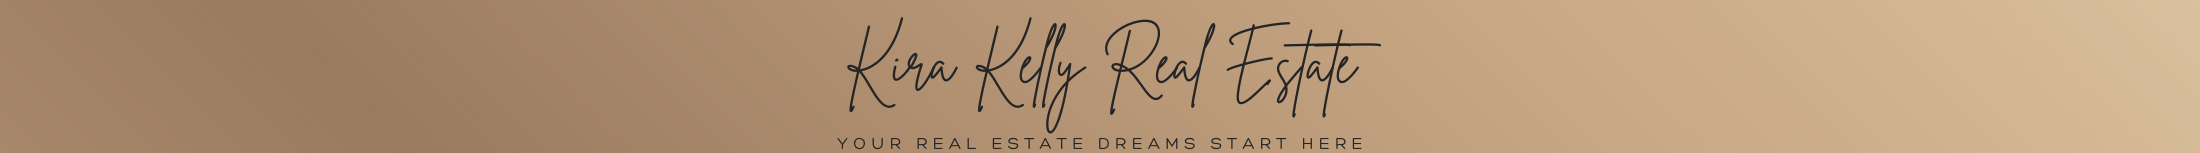 Kira Kelly Real Estate Gold Logo 2220x153